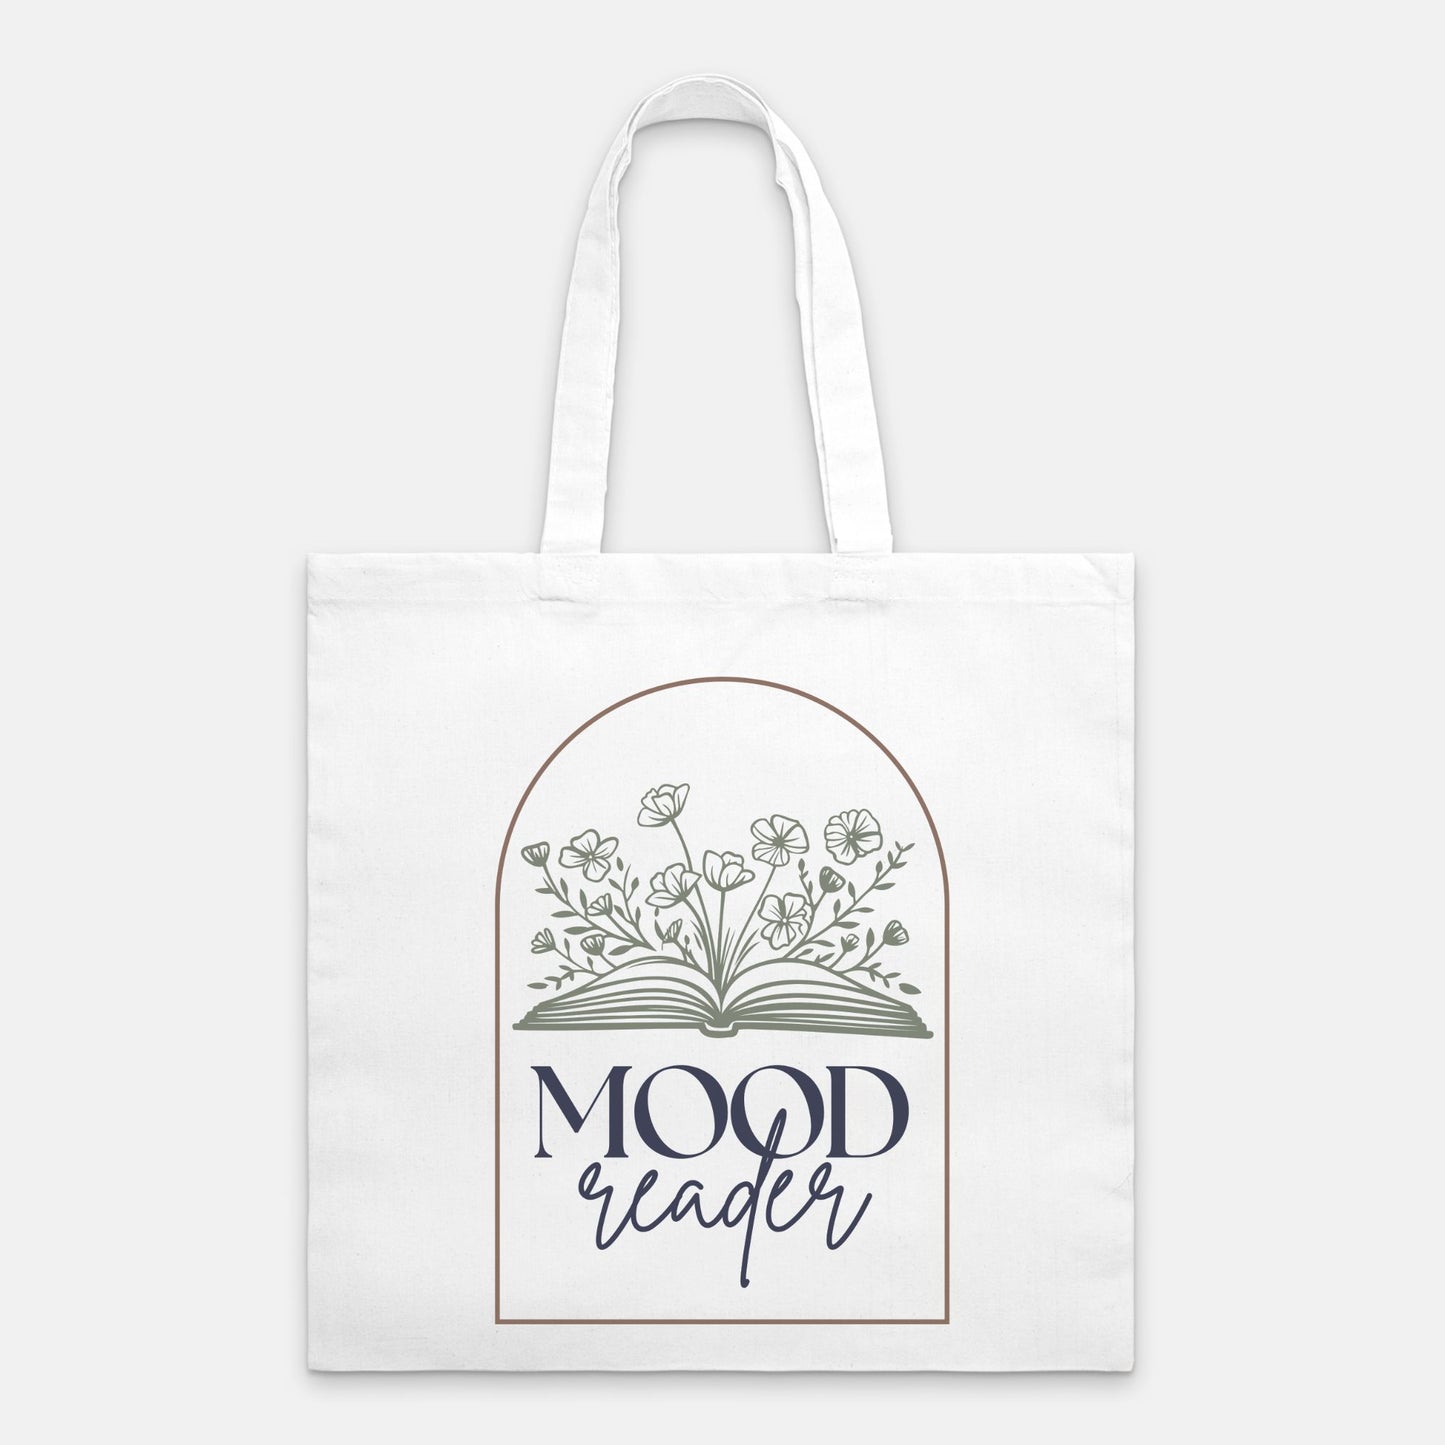 Mood Reader Tote Bag Earth Tones